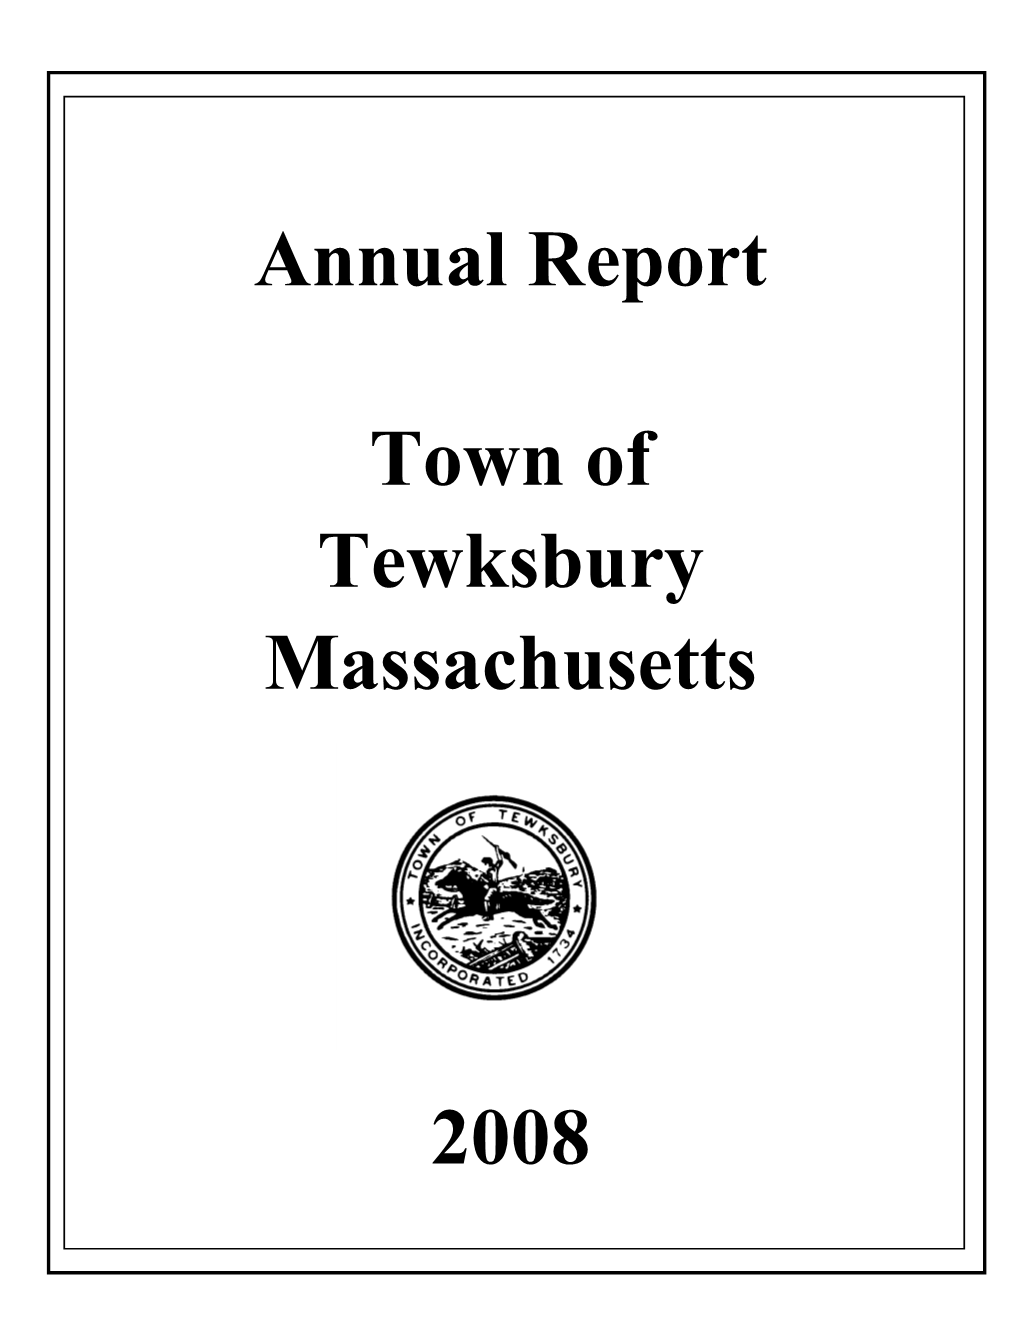 Annual Report Town of Tewksbury Massachusetts 2008